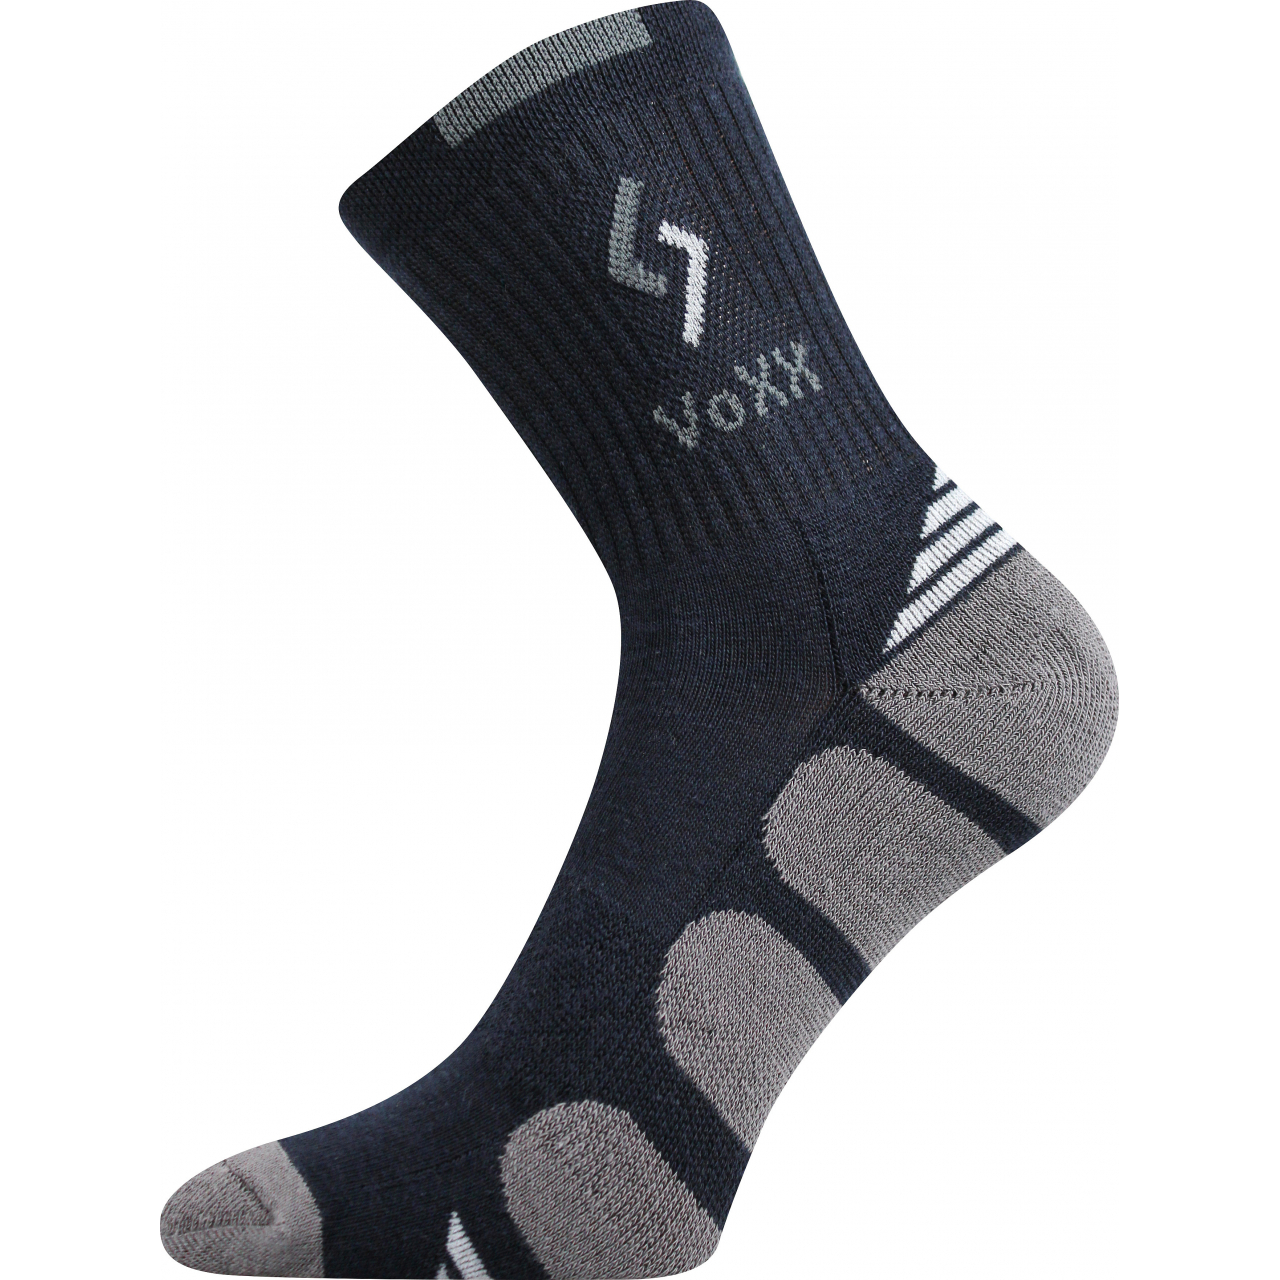 Ponožky sportovní Voxx Tronic - tmavě modré-šedé, 39-42